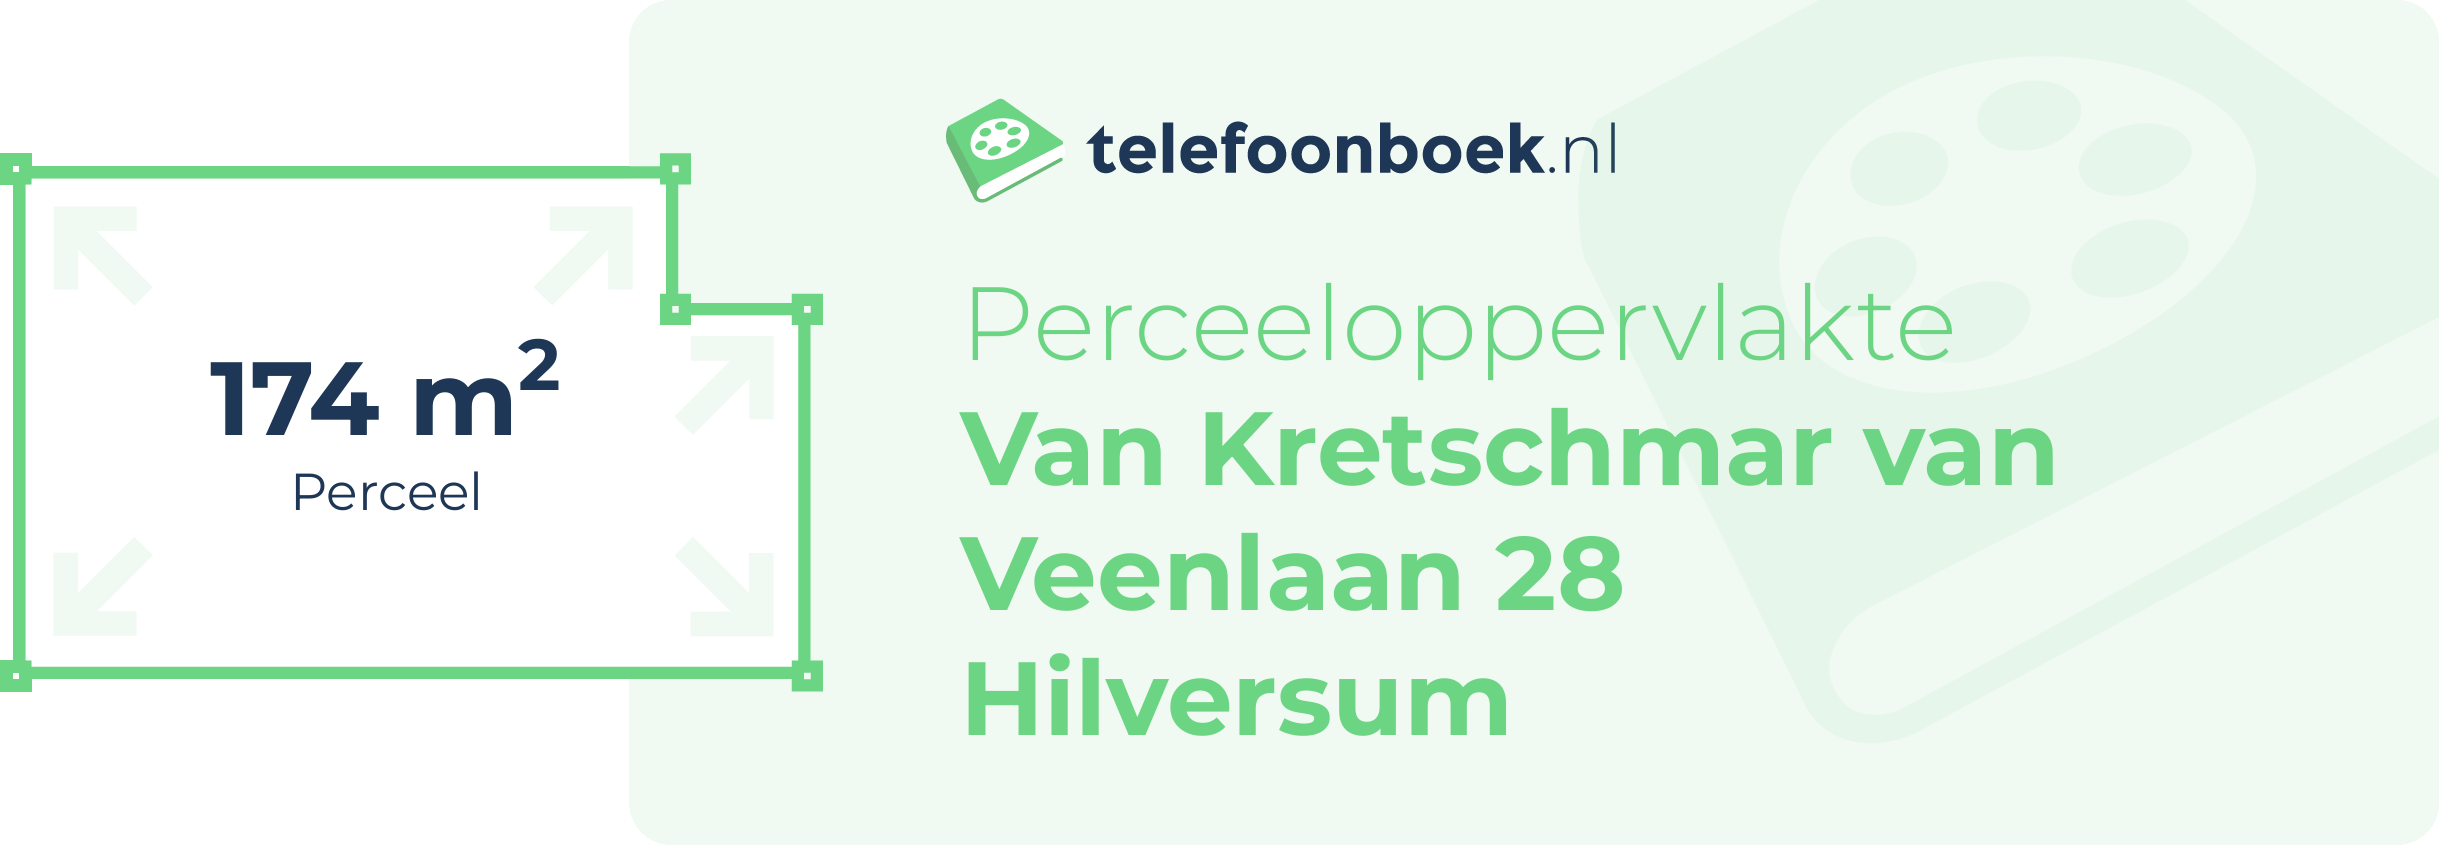 Perceeloppervlakte Van Kretschmar Van Veenlaan 28 Hilversum